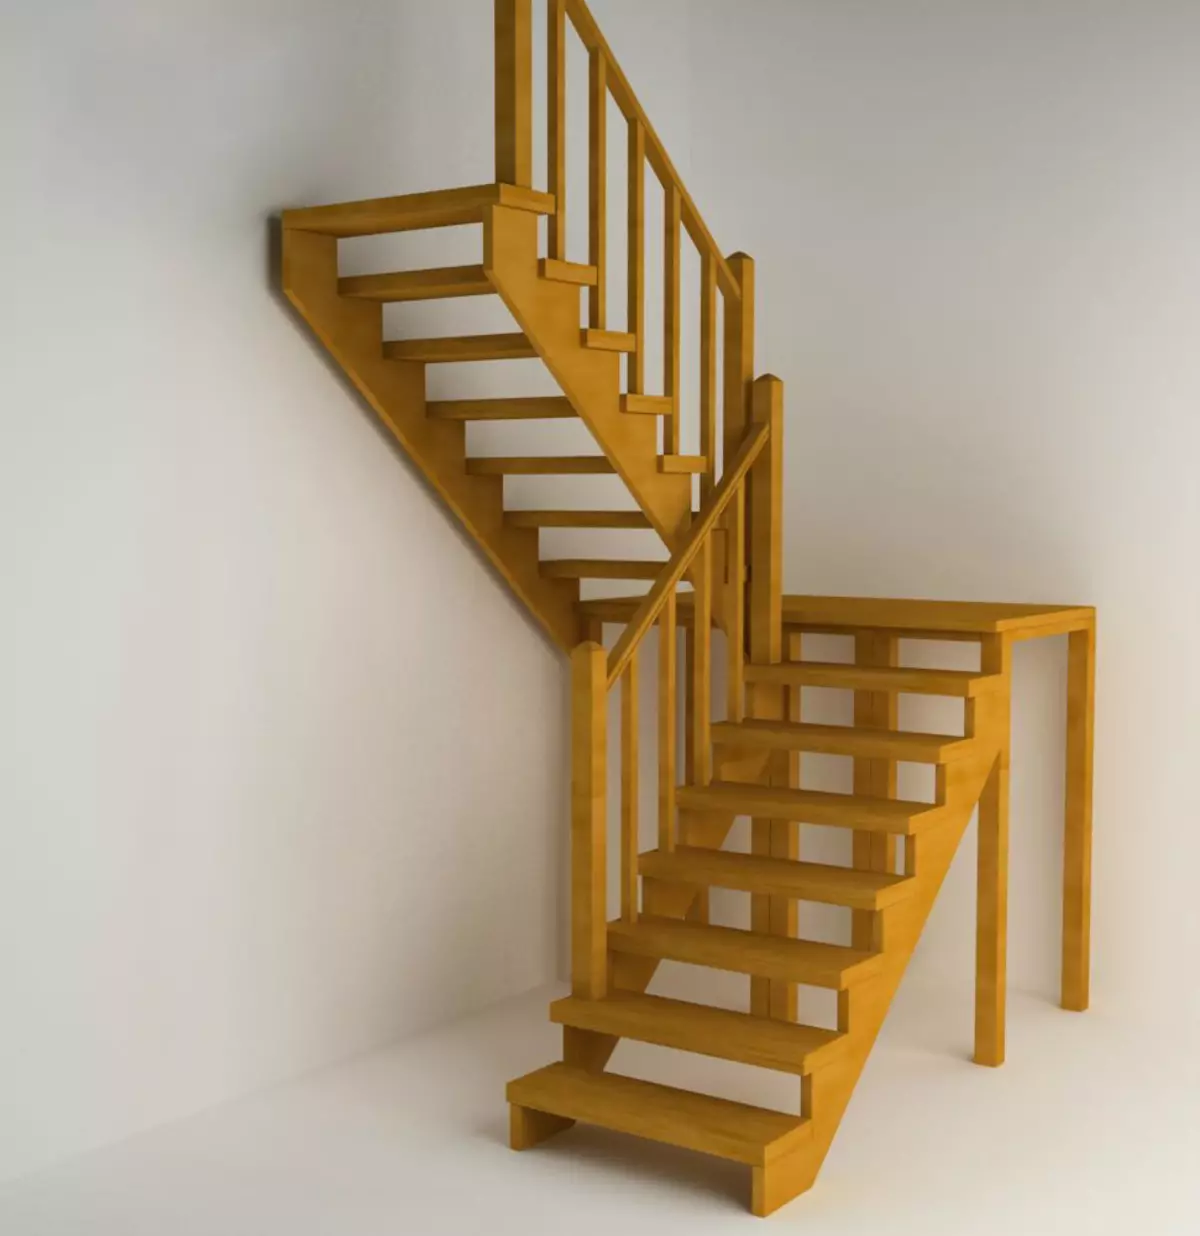 تصميم الدرج لمدة عامين